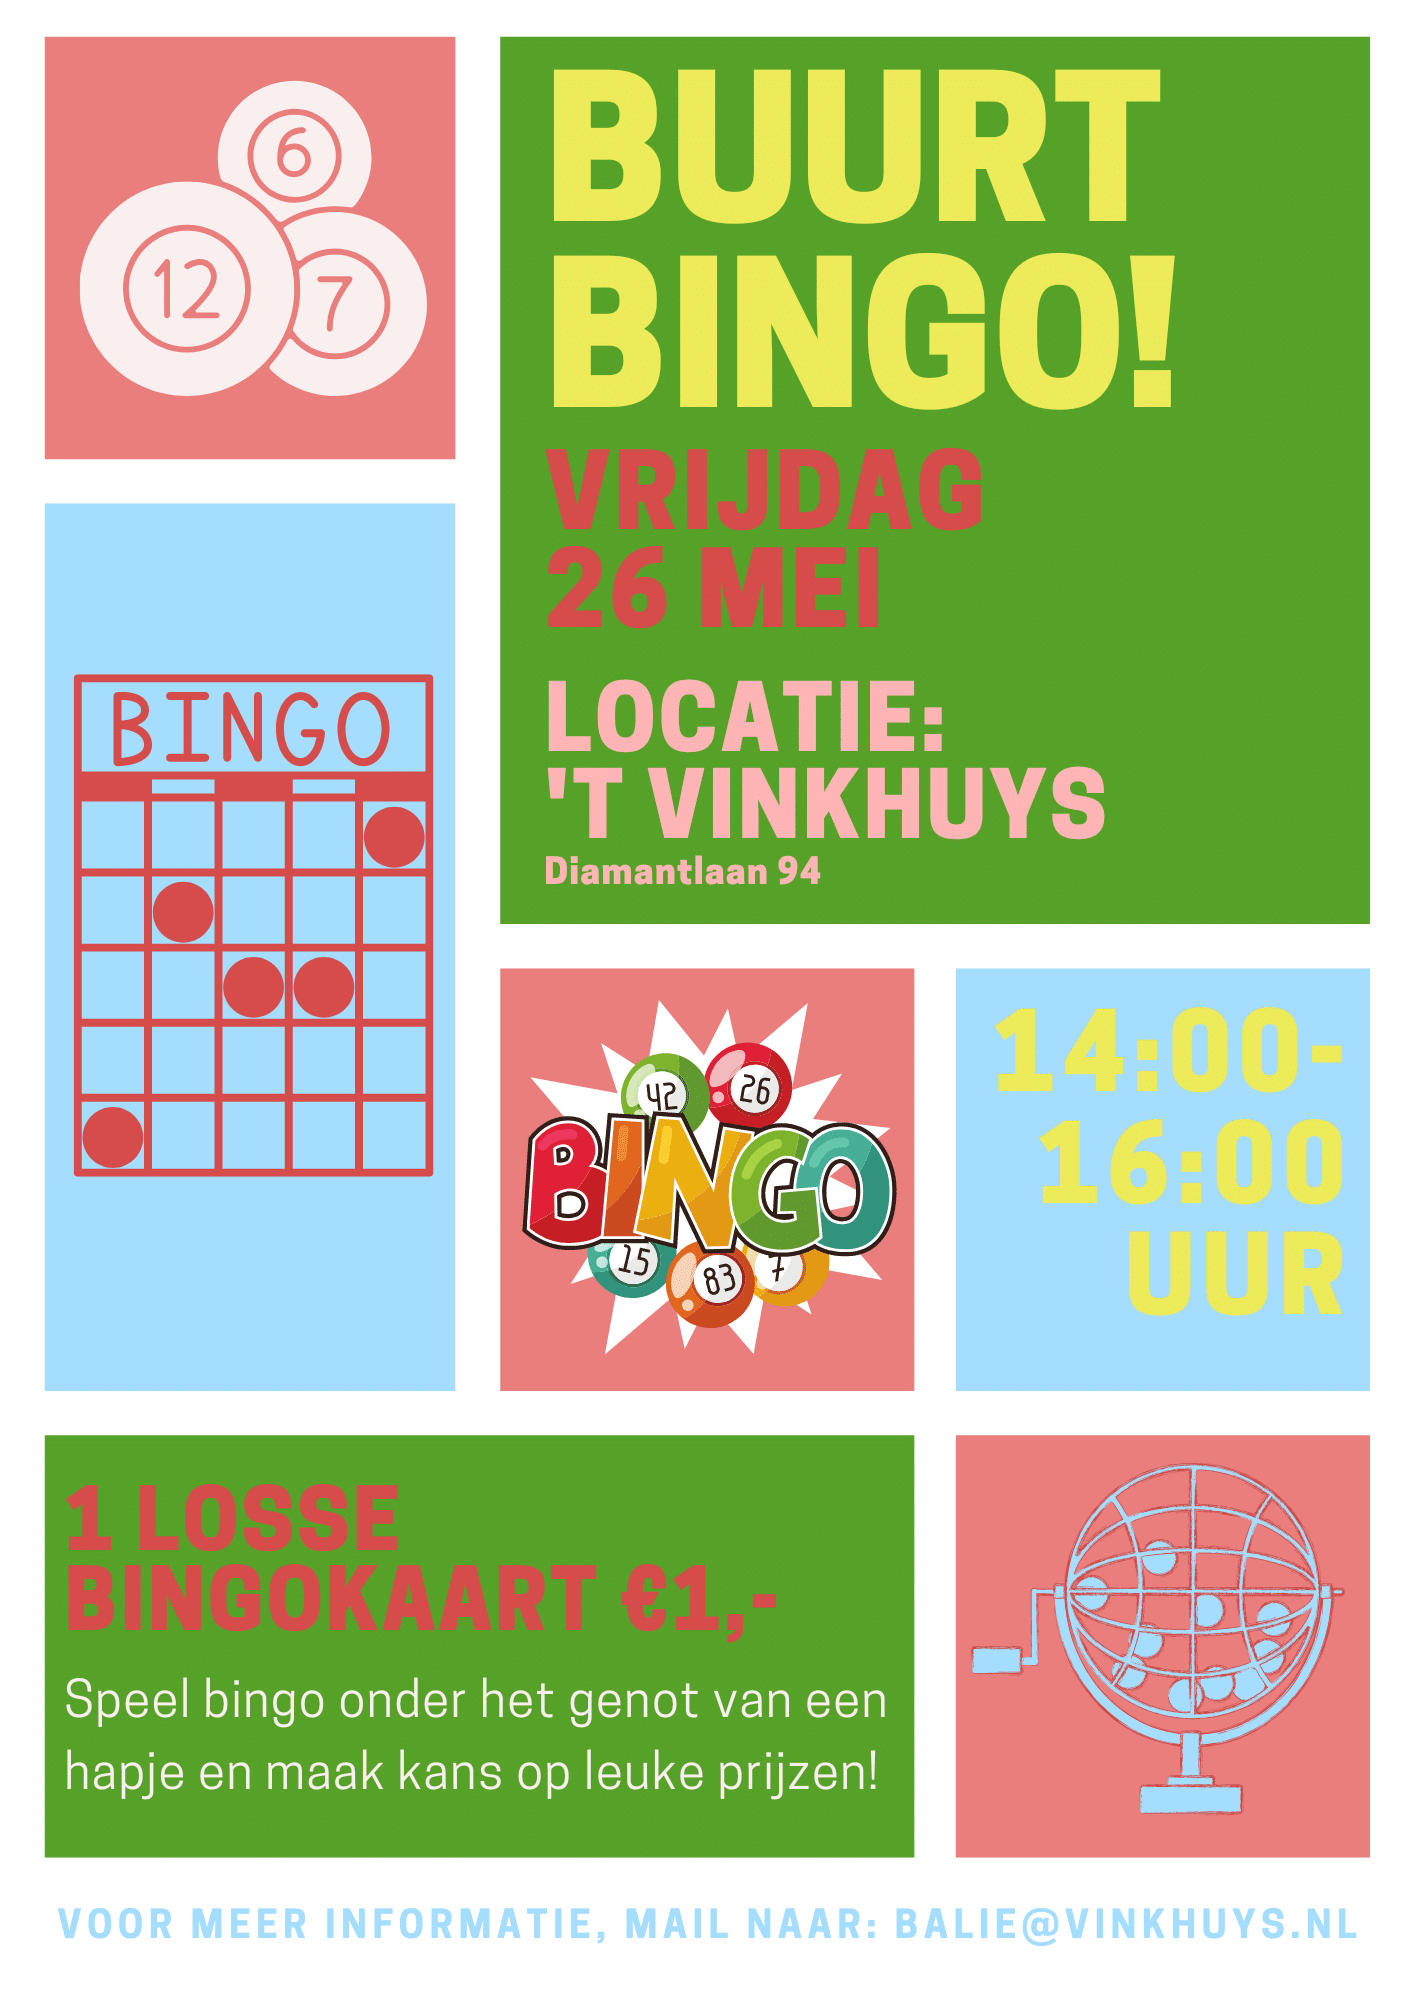 Buurt bingo- 26 mei